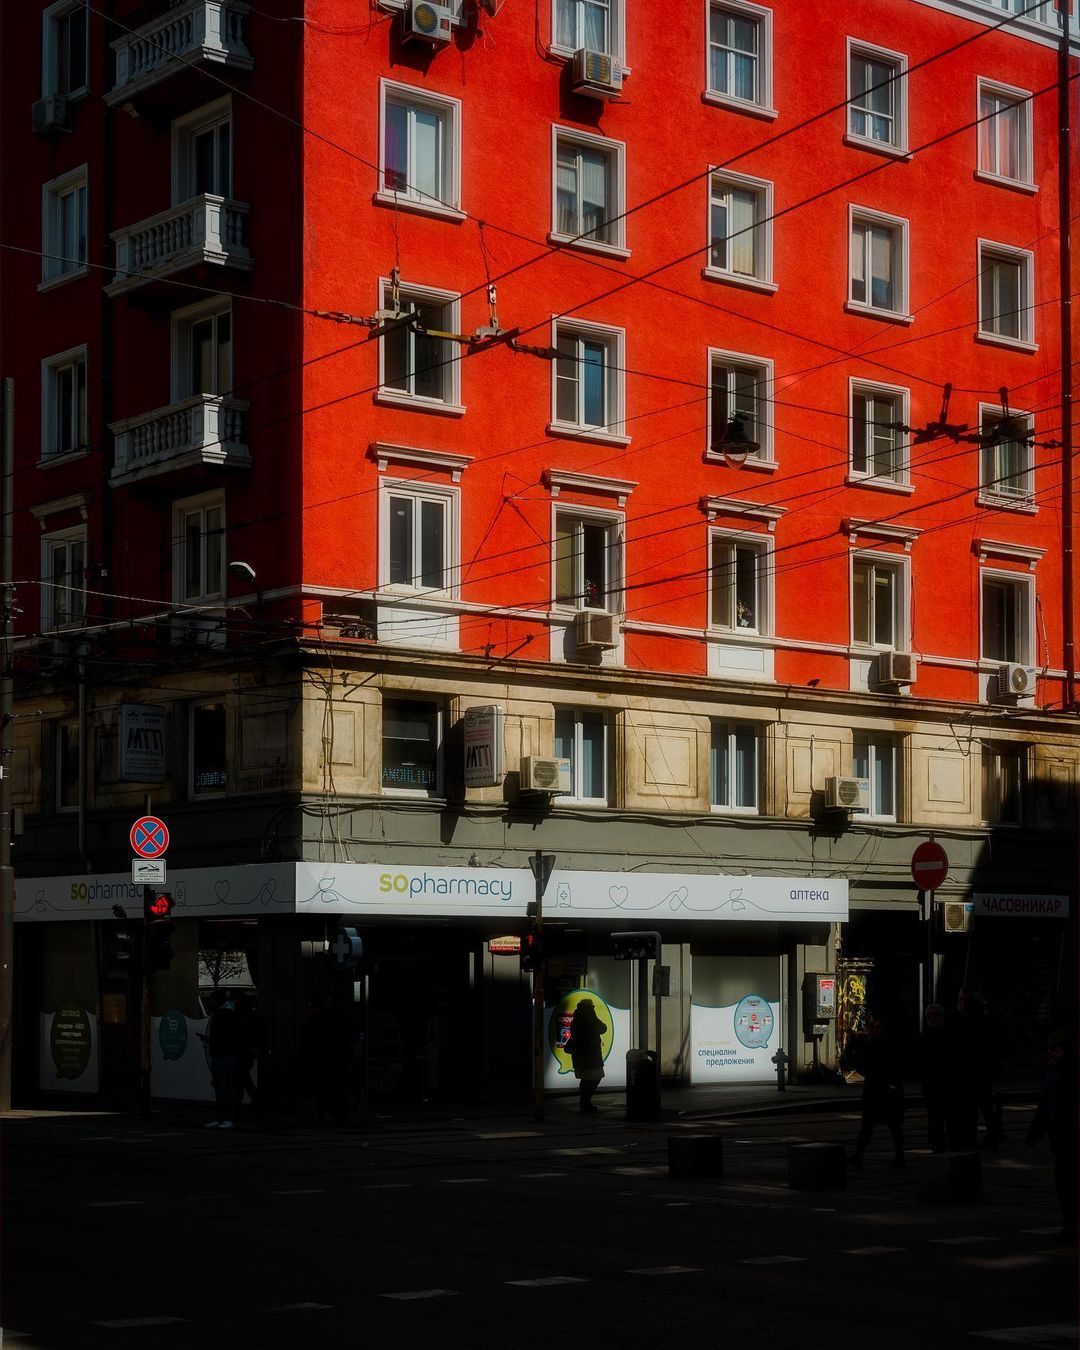 Снимки городских улиц от Рамона Брито